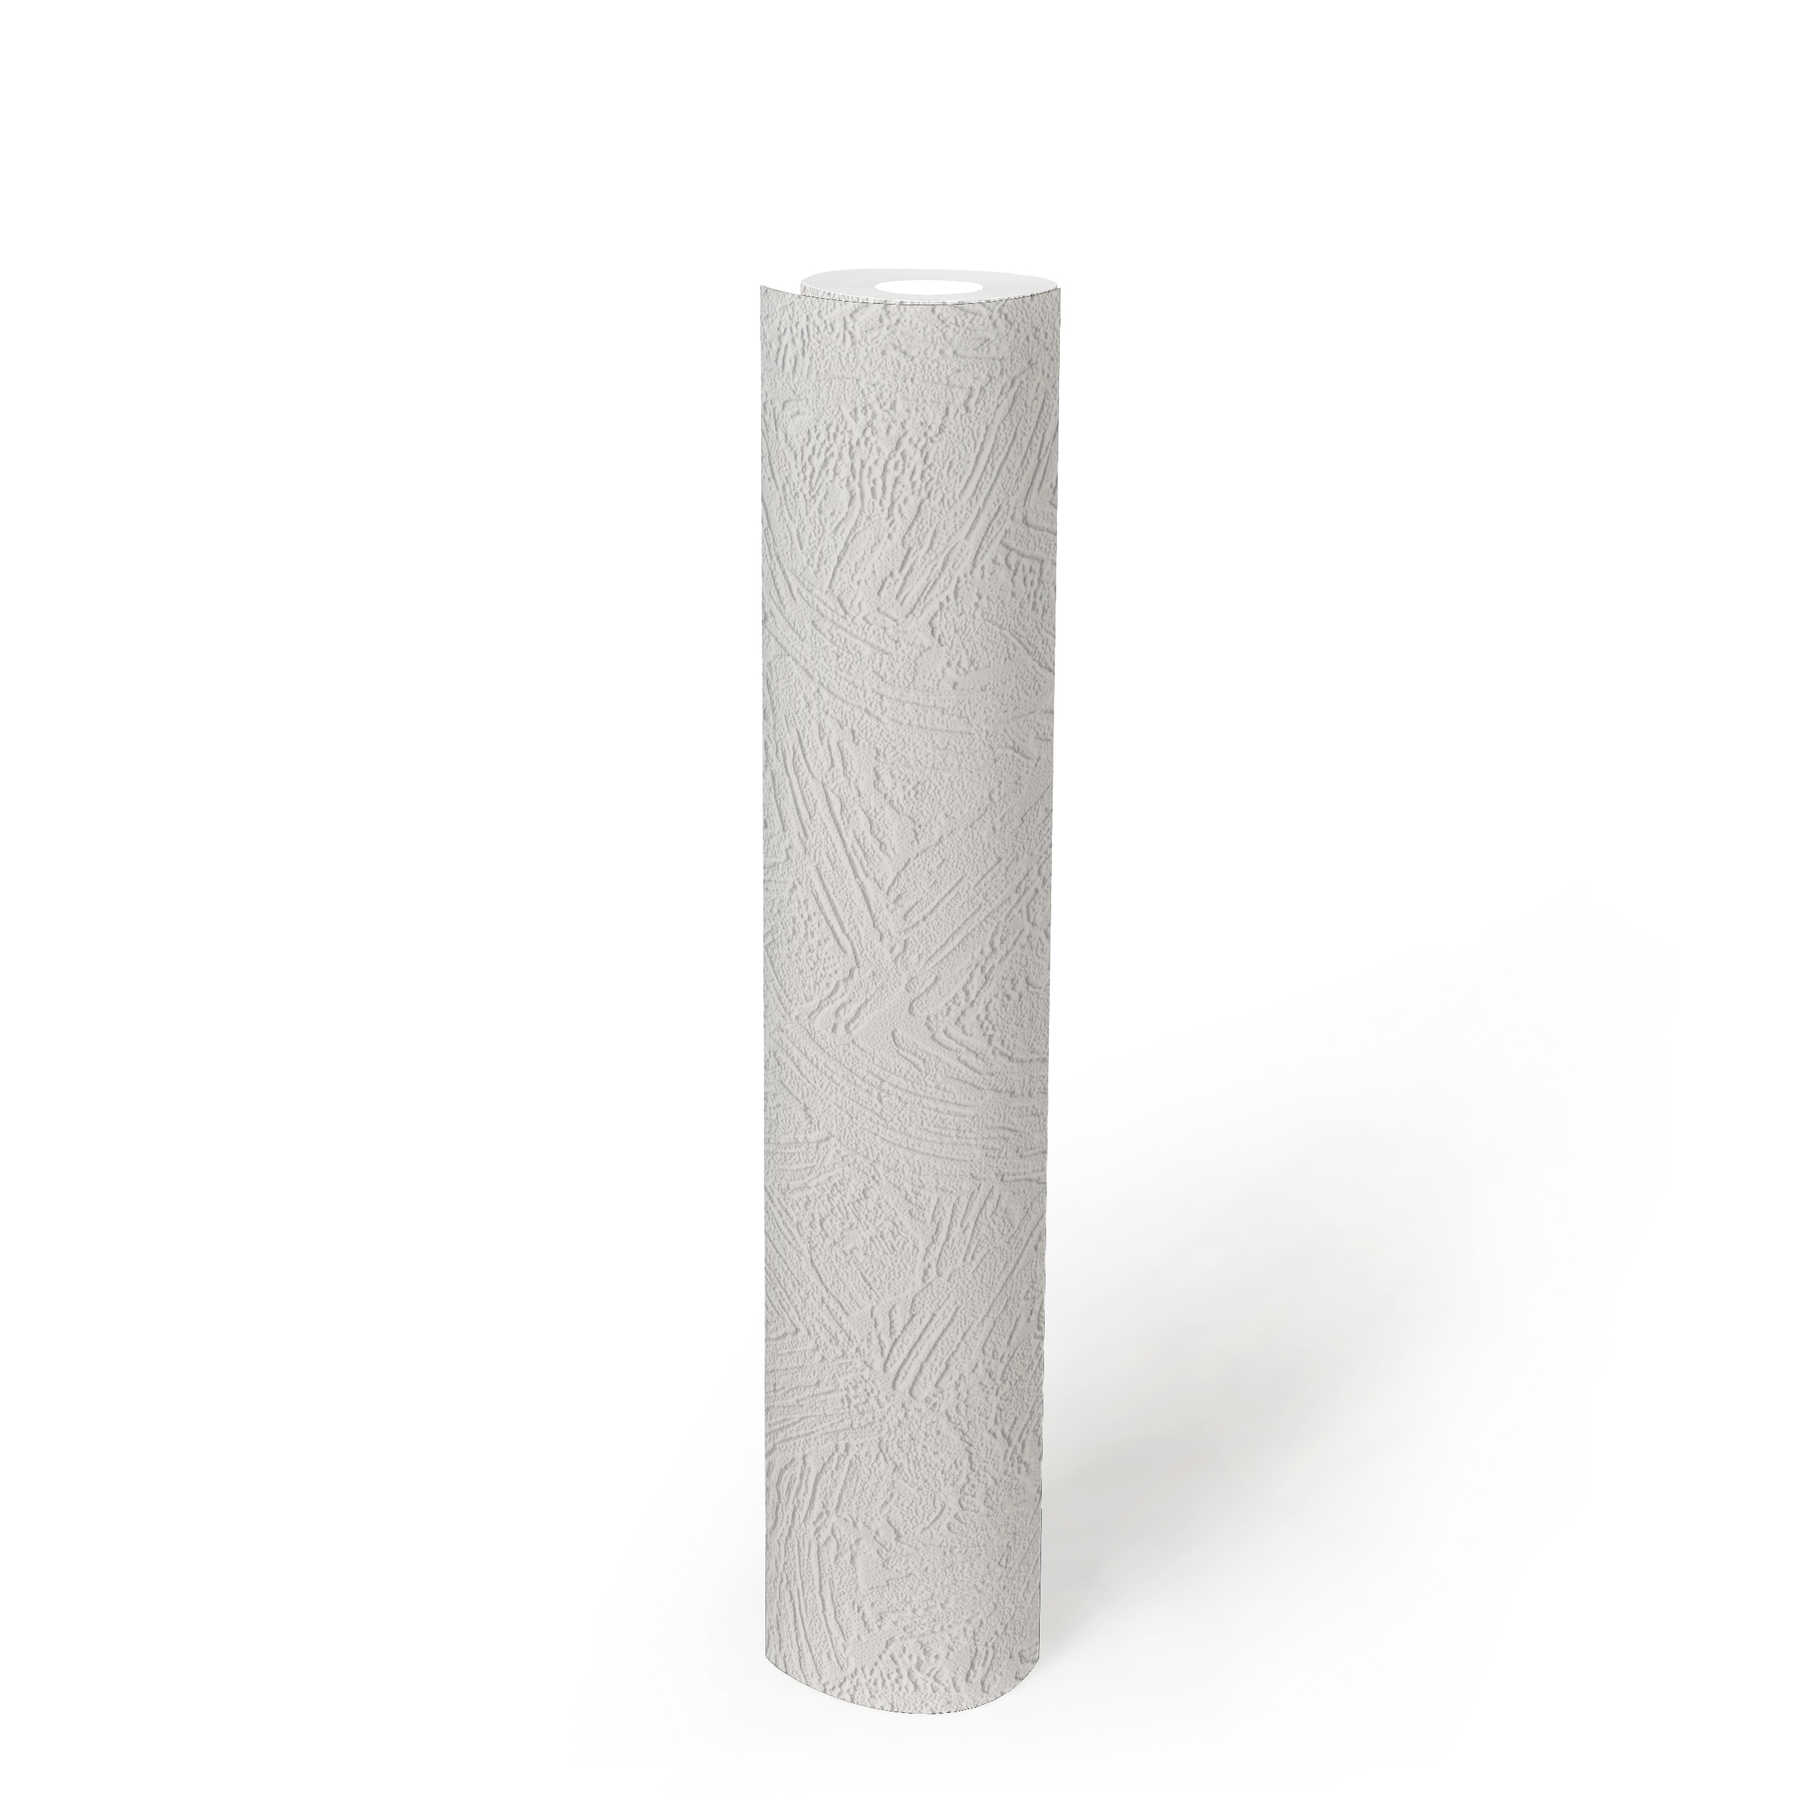             Papiertapete Dekor Putz mit Strukturmuster – Weiß
        